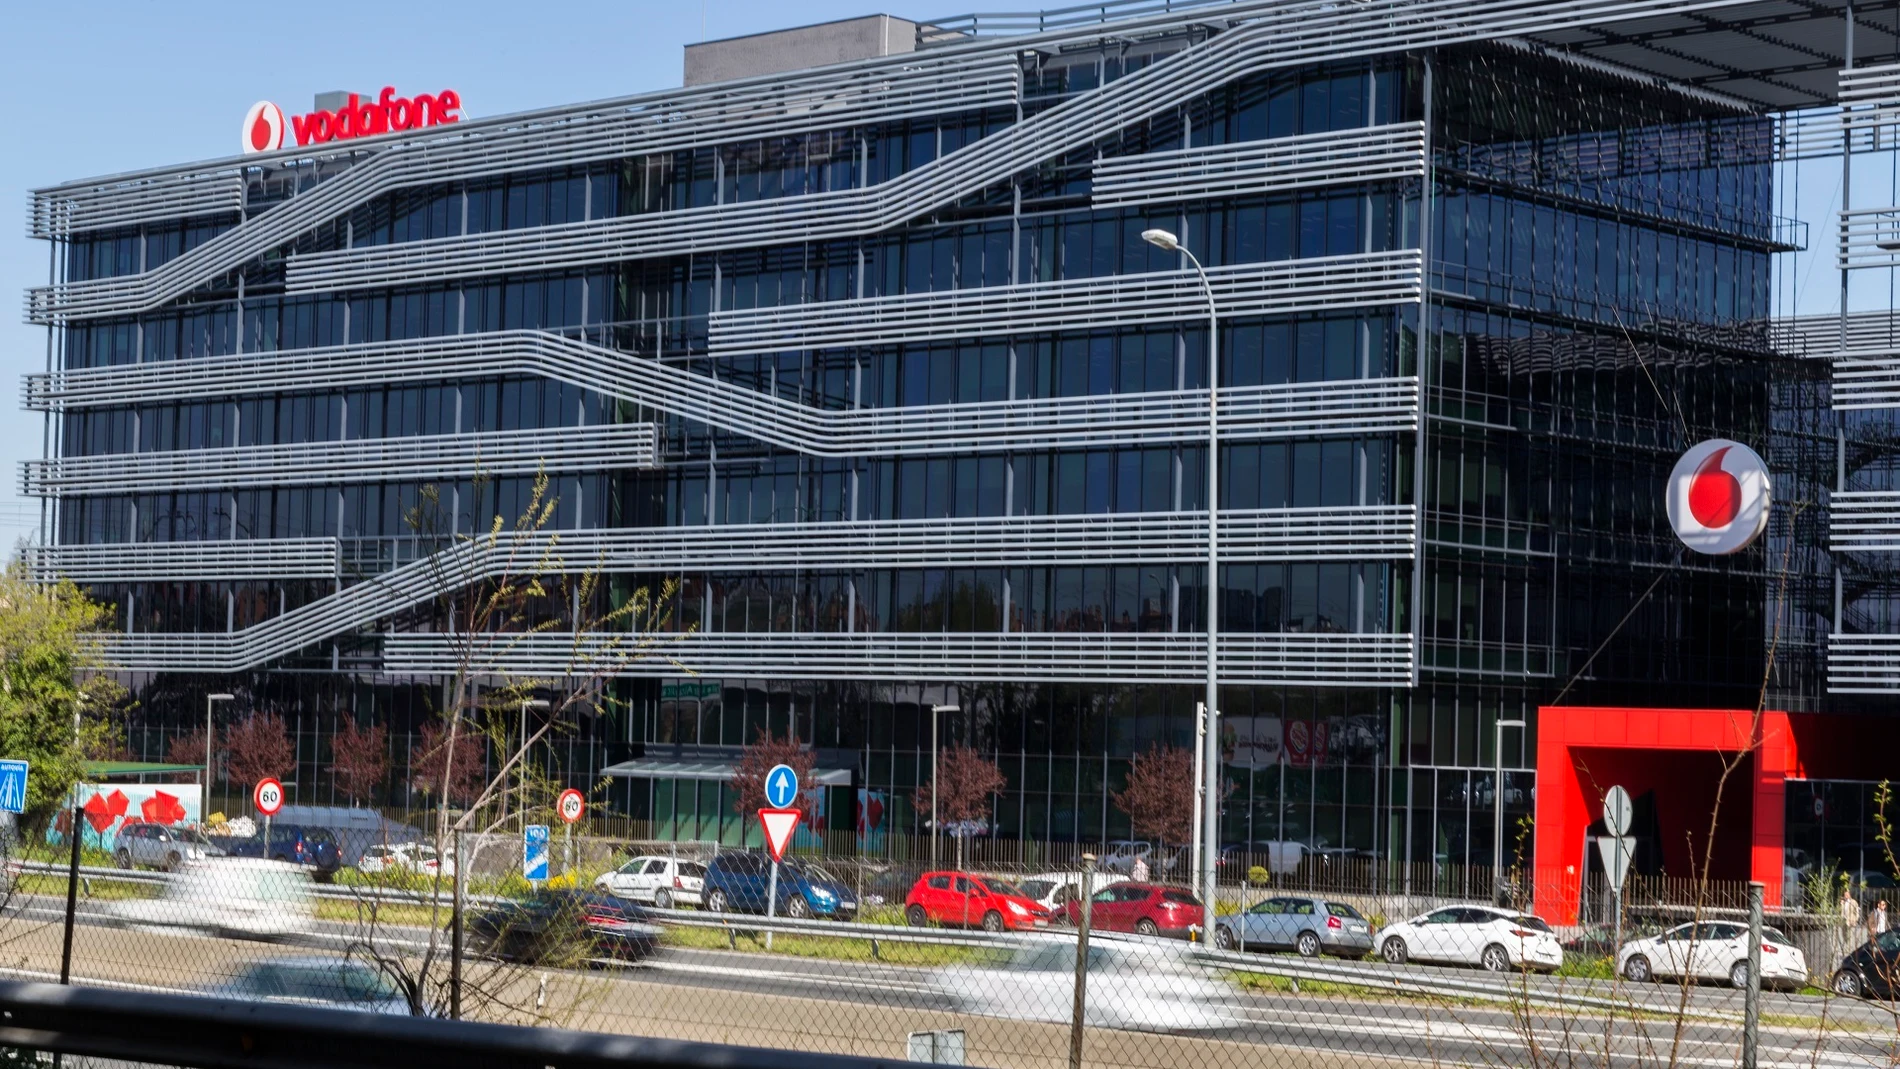 Economía.- El fondo británico Zegona adquiere el 100% del negocio de Vodafone en España por 5.000 millones de euros